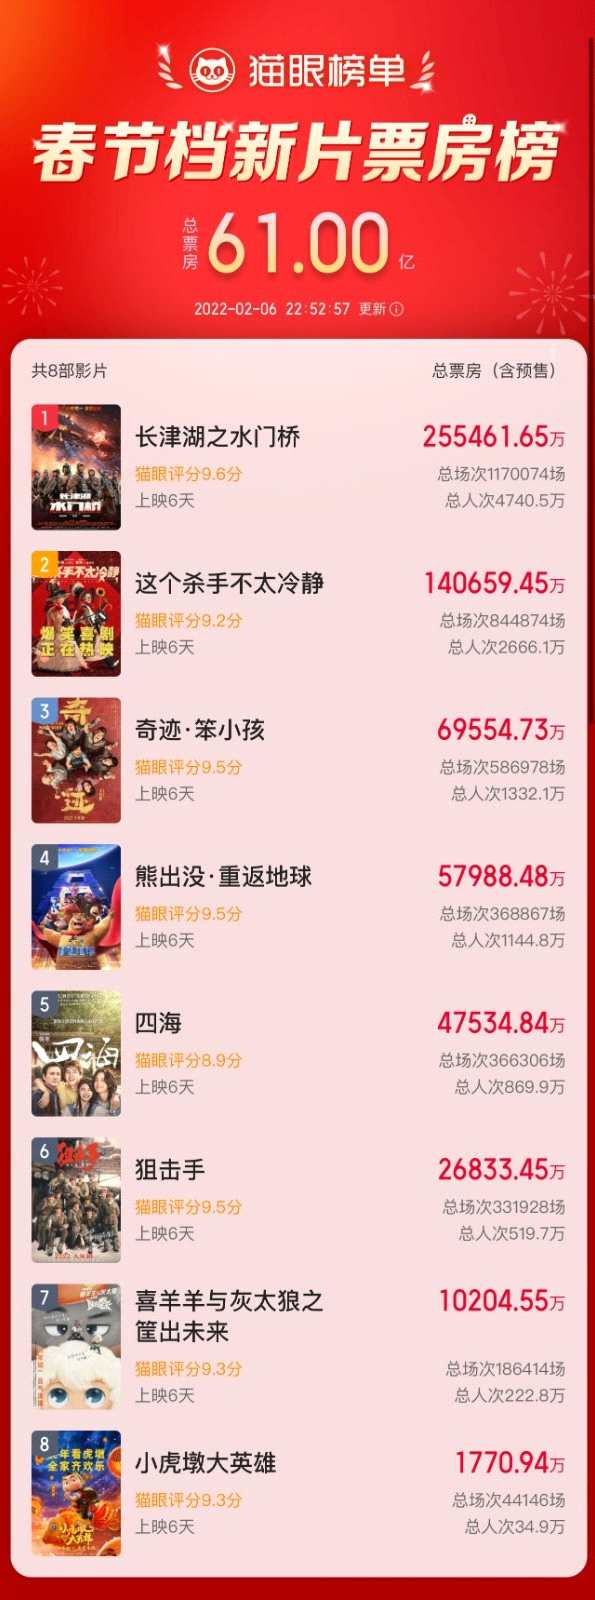 春节档新片总票房破61亿 《长津湖之水门桥》破25亿